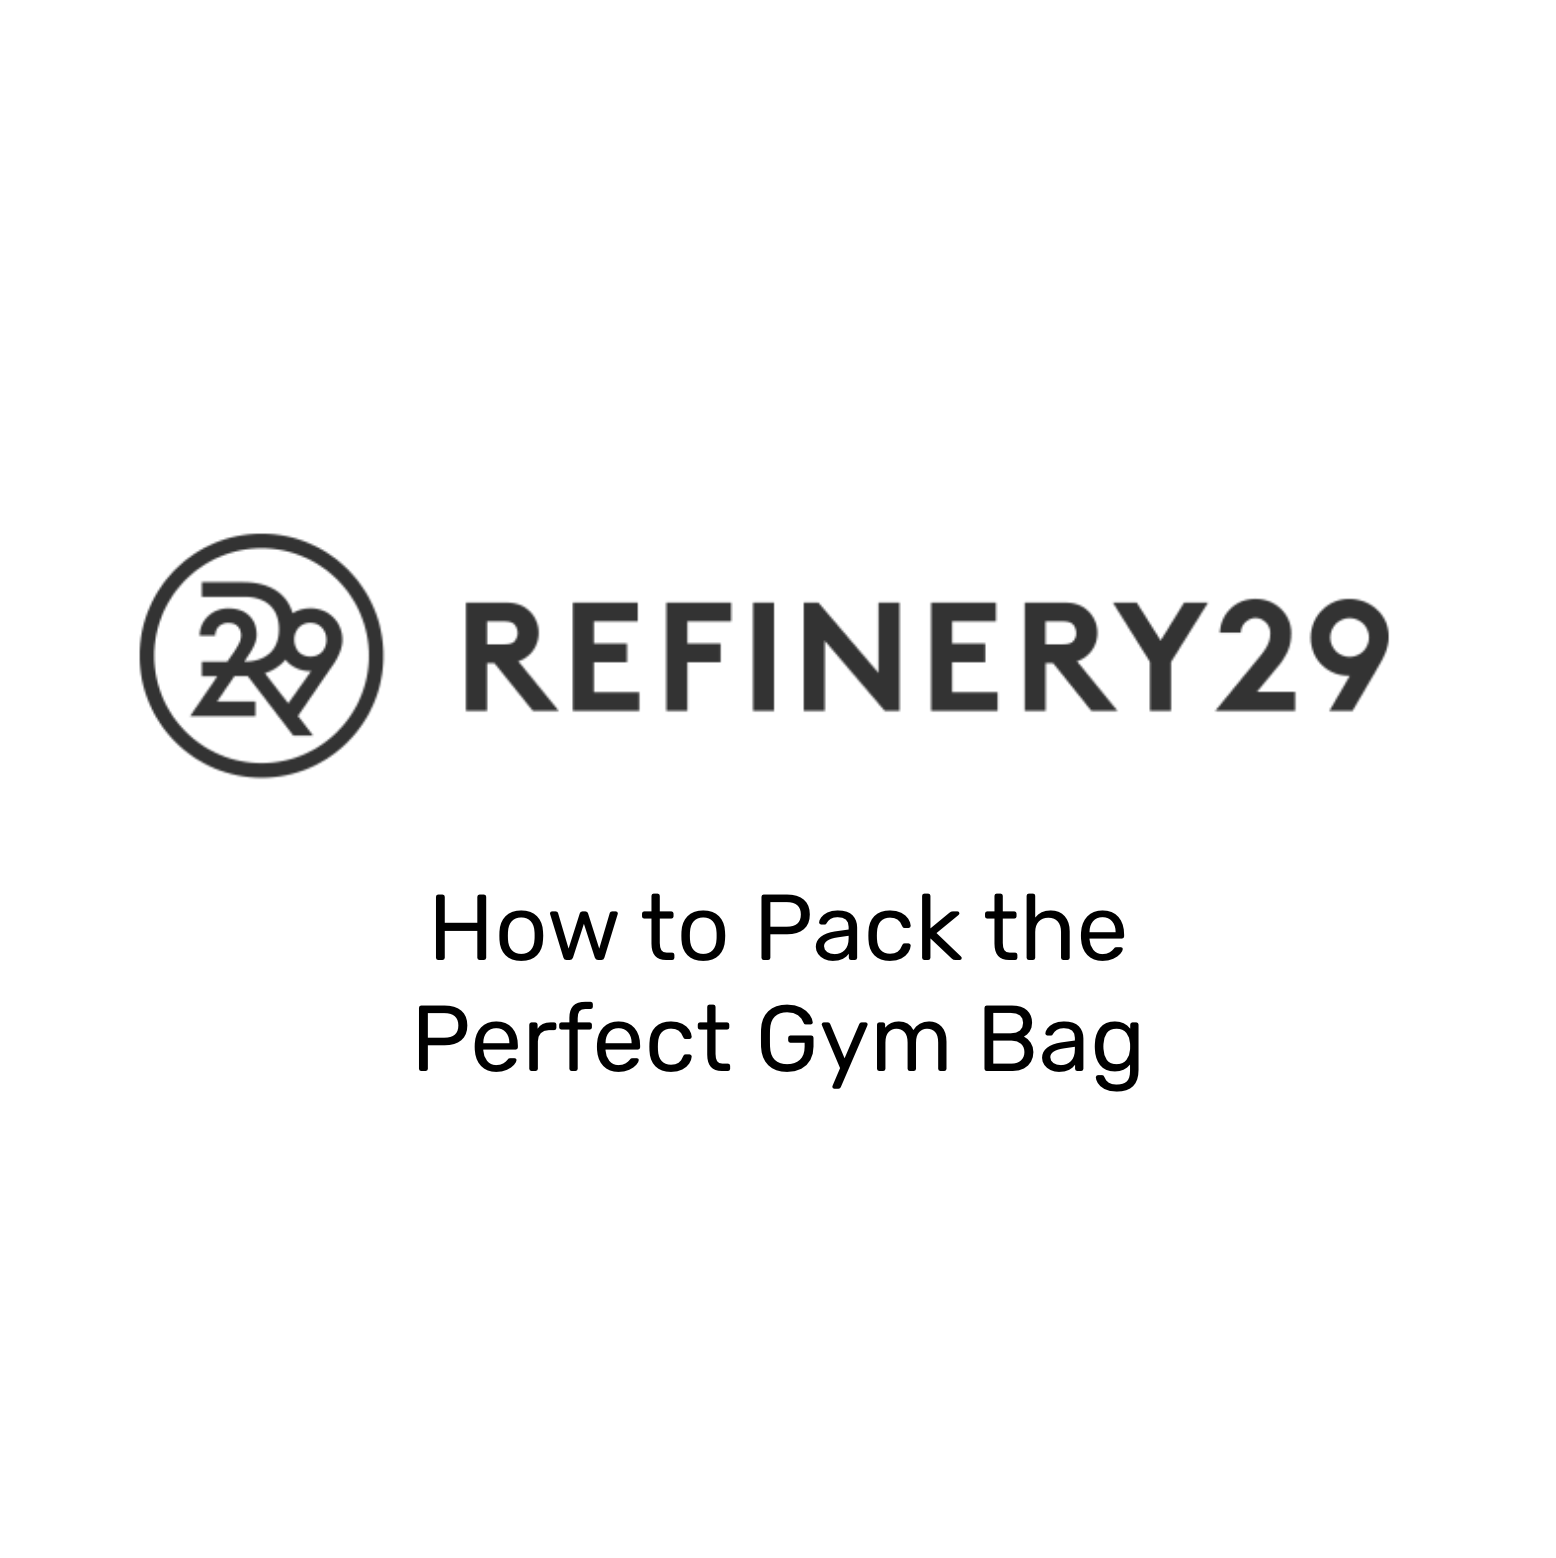 Refinery29